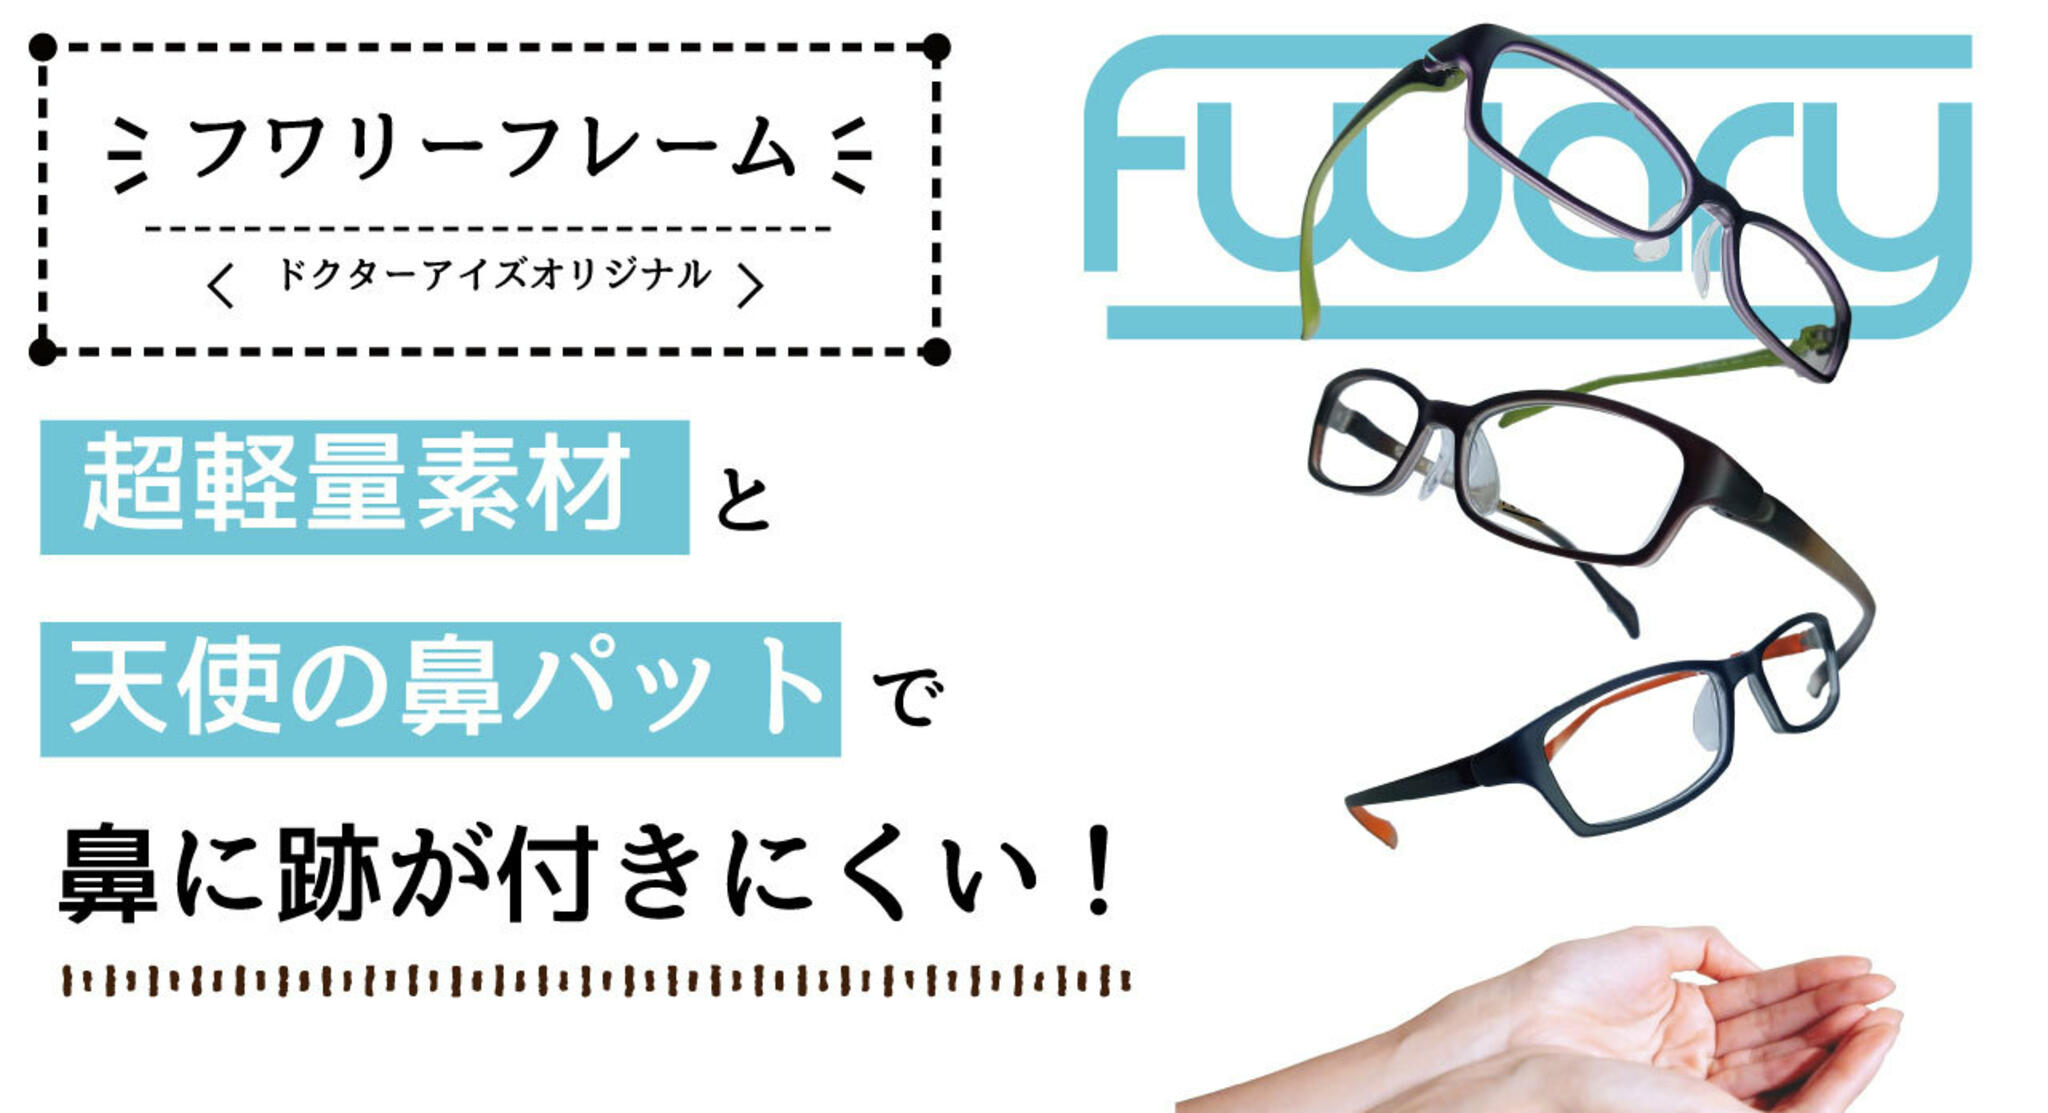 ドクターアイズ 兵庫加古川店からのお知らせ(人気の快適メガネ『フワリーフレーム』)に関する写真